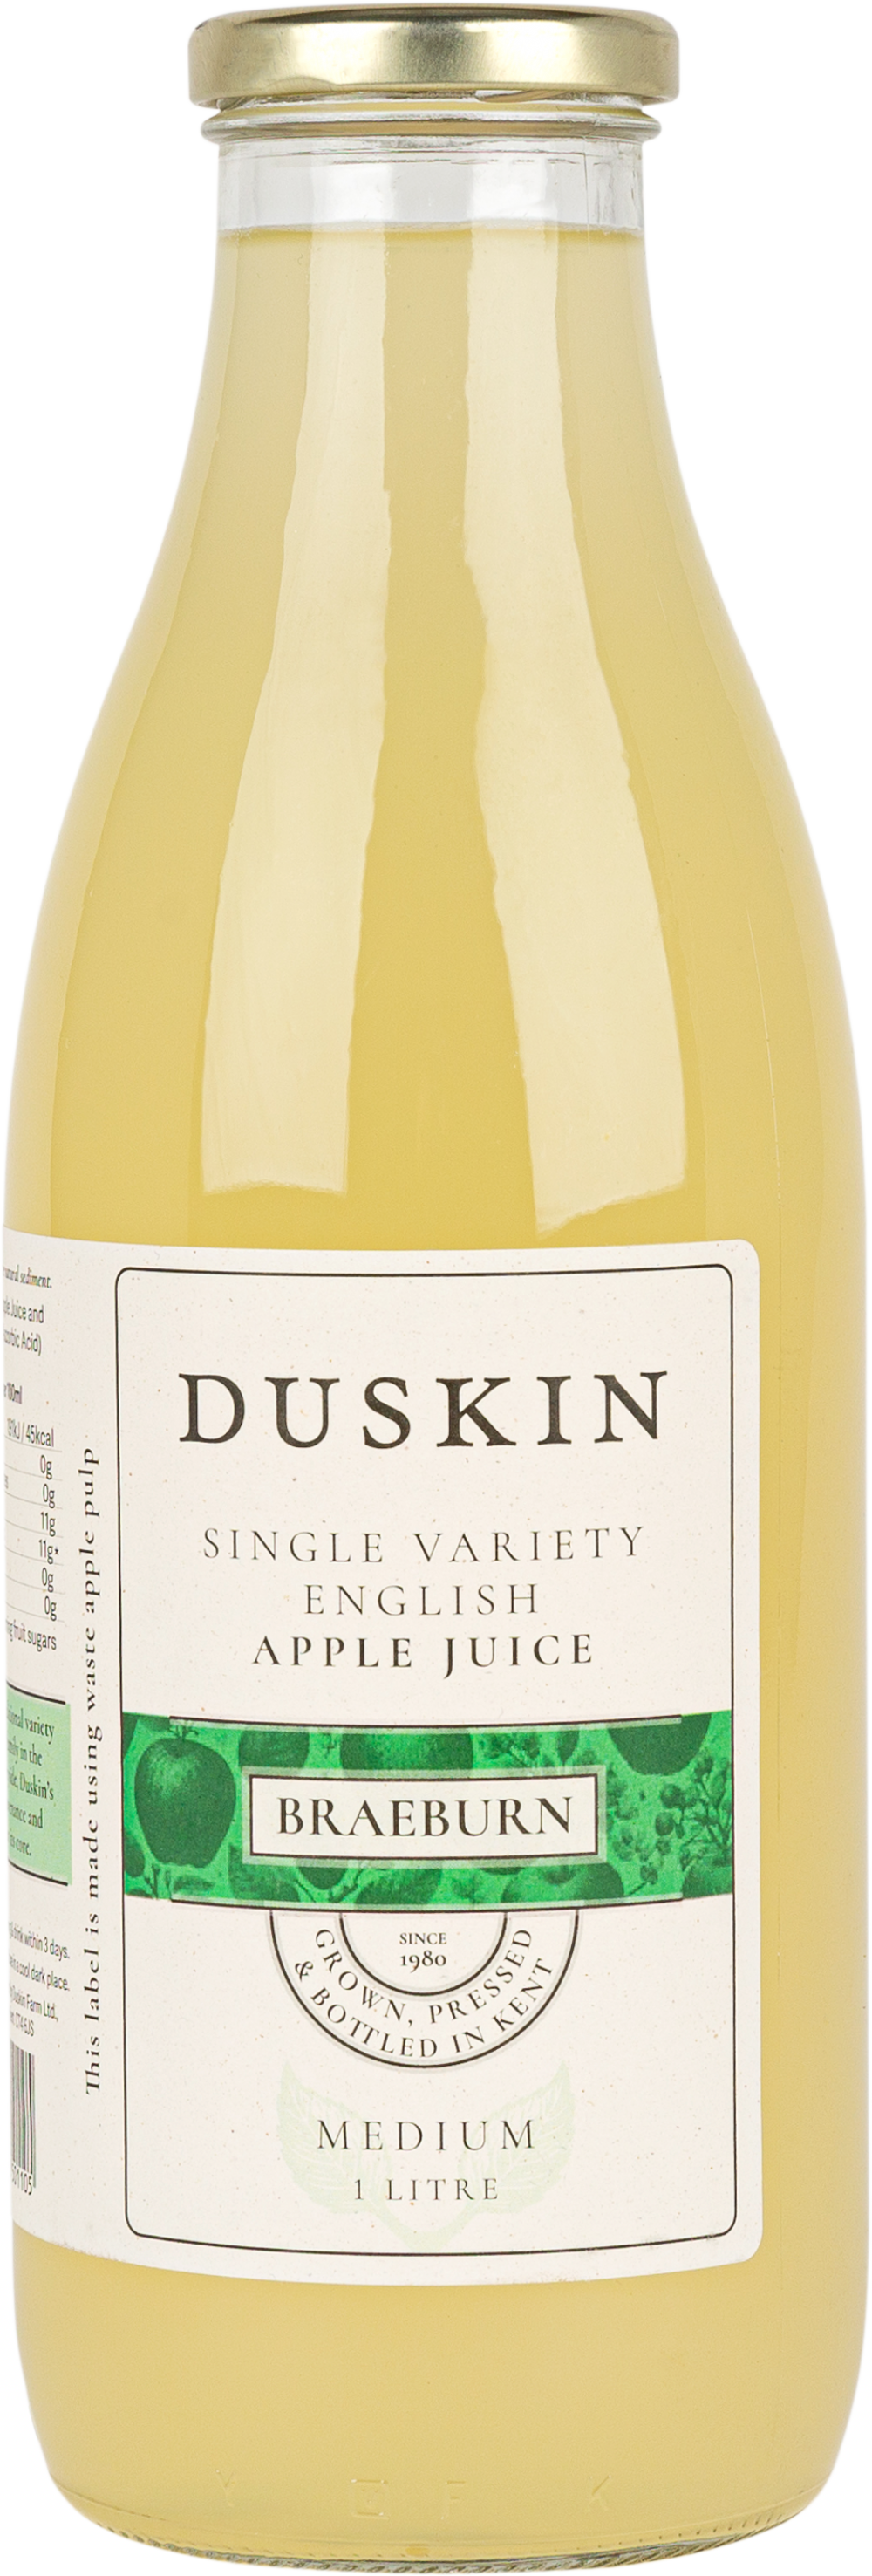 DUSKIN Pure English Apple Juice - Braeburn 1L